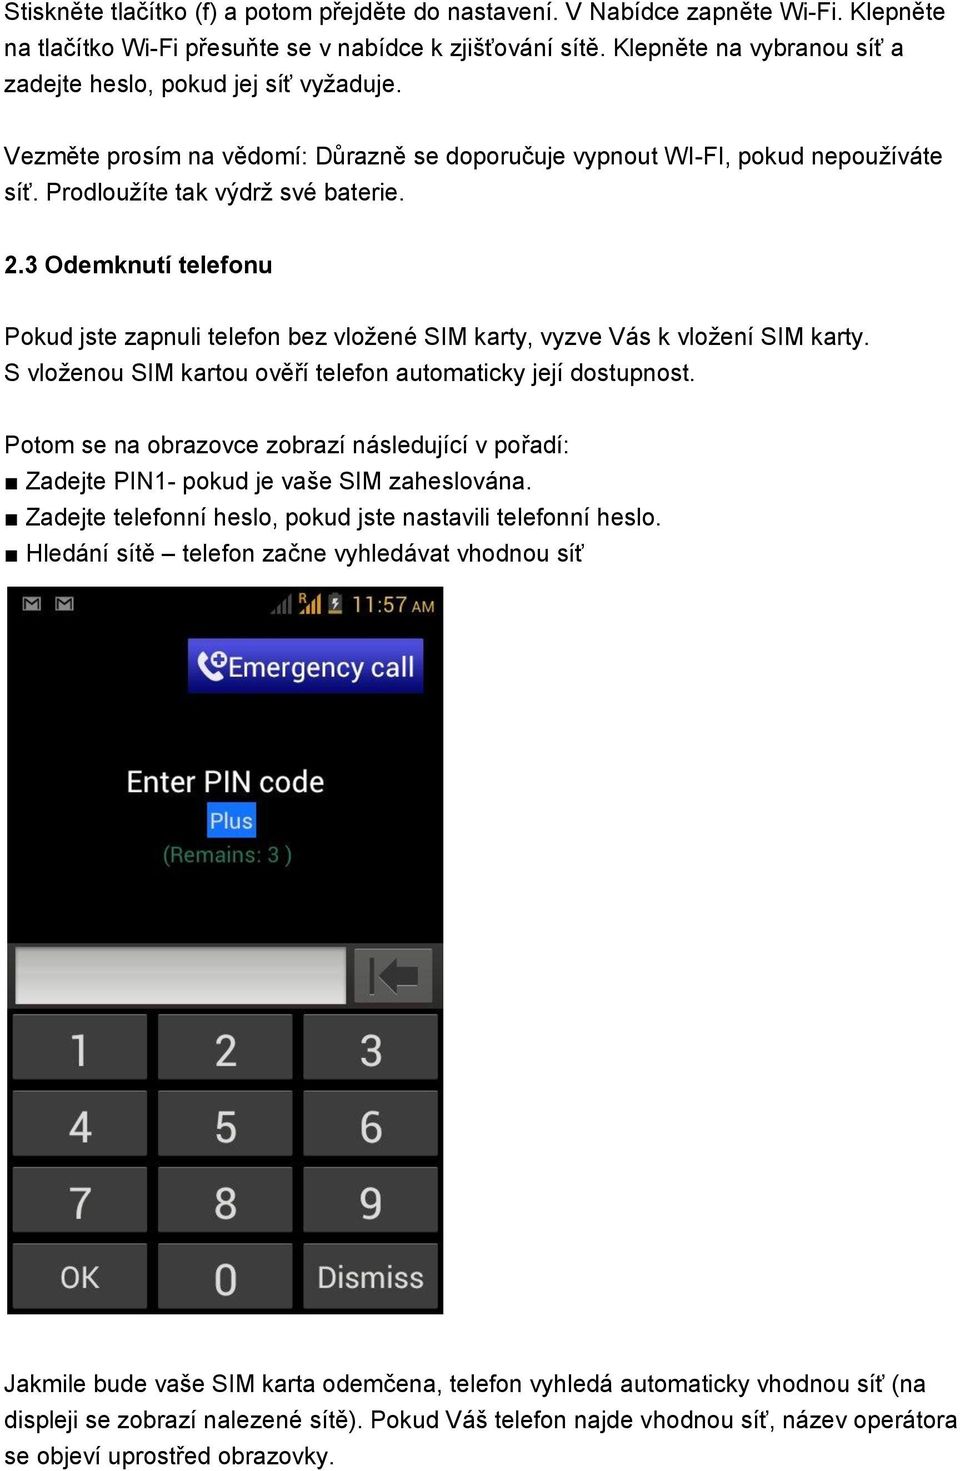 3 Odemknutí telefonu Pokud jste zapnuli telefon bez vložené SIM karty, vyzve Vás k vložení SIM karty. S vloženou SIM kartou ověří telefon automaticky její dostupnost.